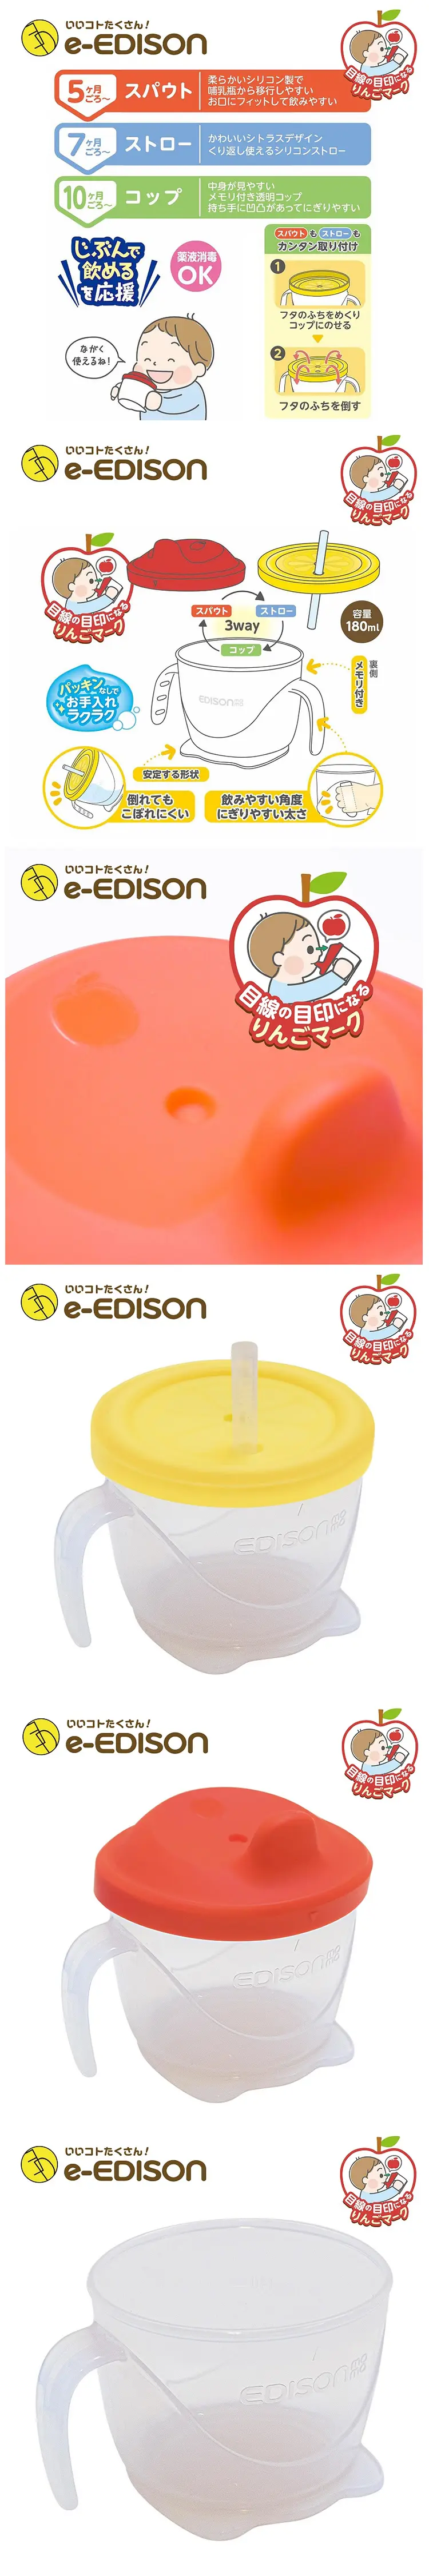 Edison 三阶段水杯套装-180ml